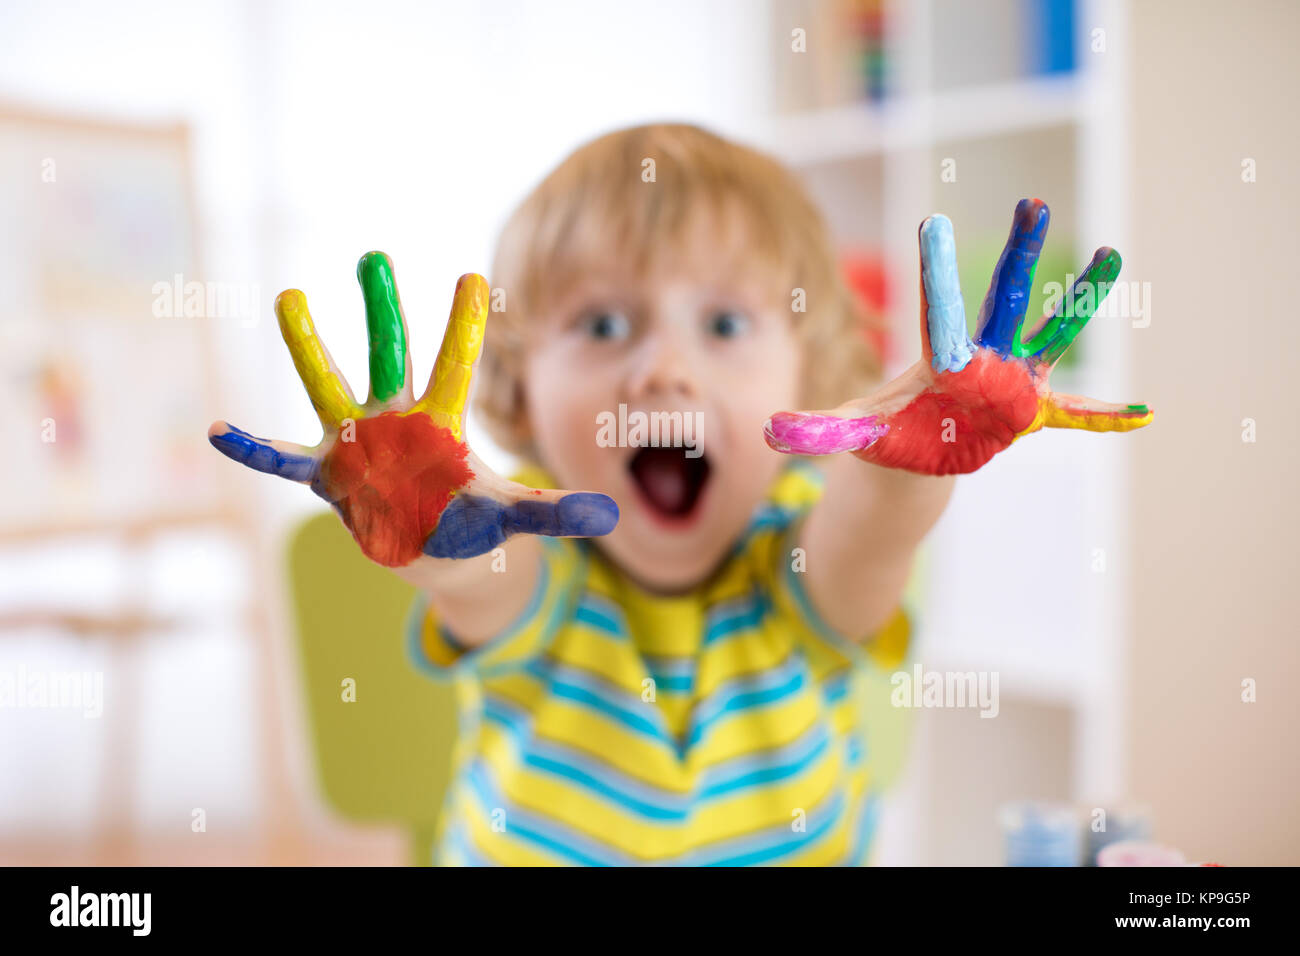 Garçon enfant joyeuse montrant mains peints dans des couleurs vives. L'accent sur la couleur de la palms Banque D'Images